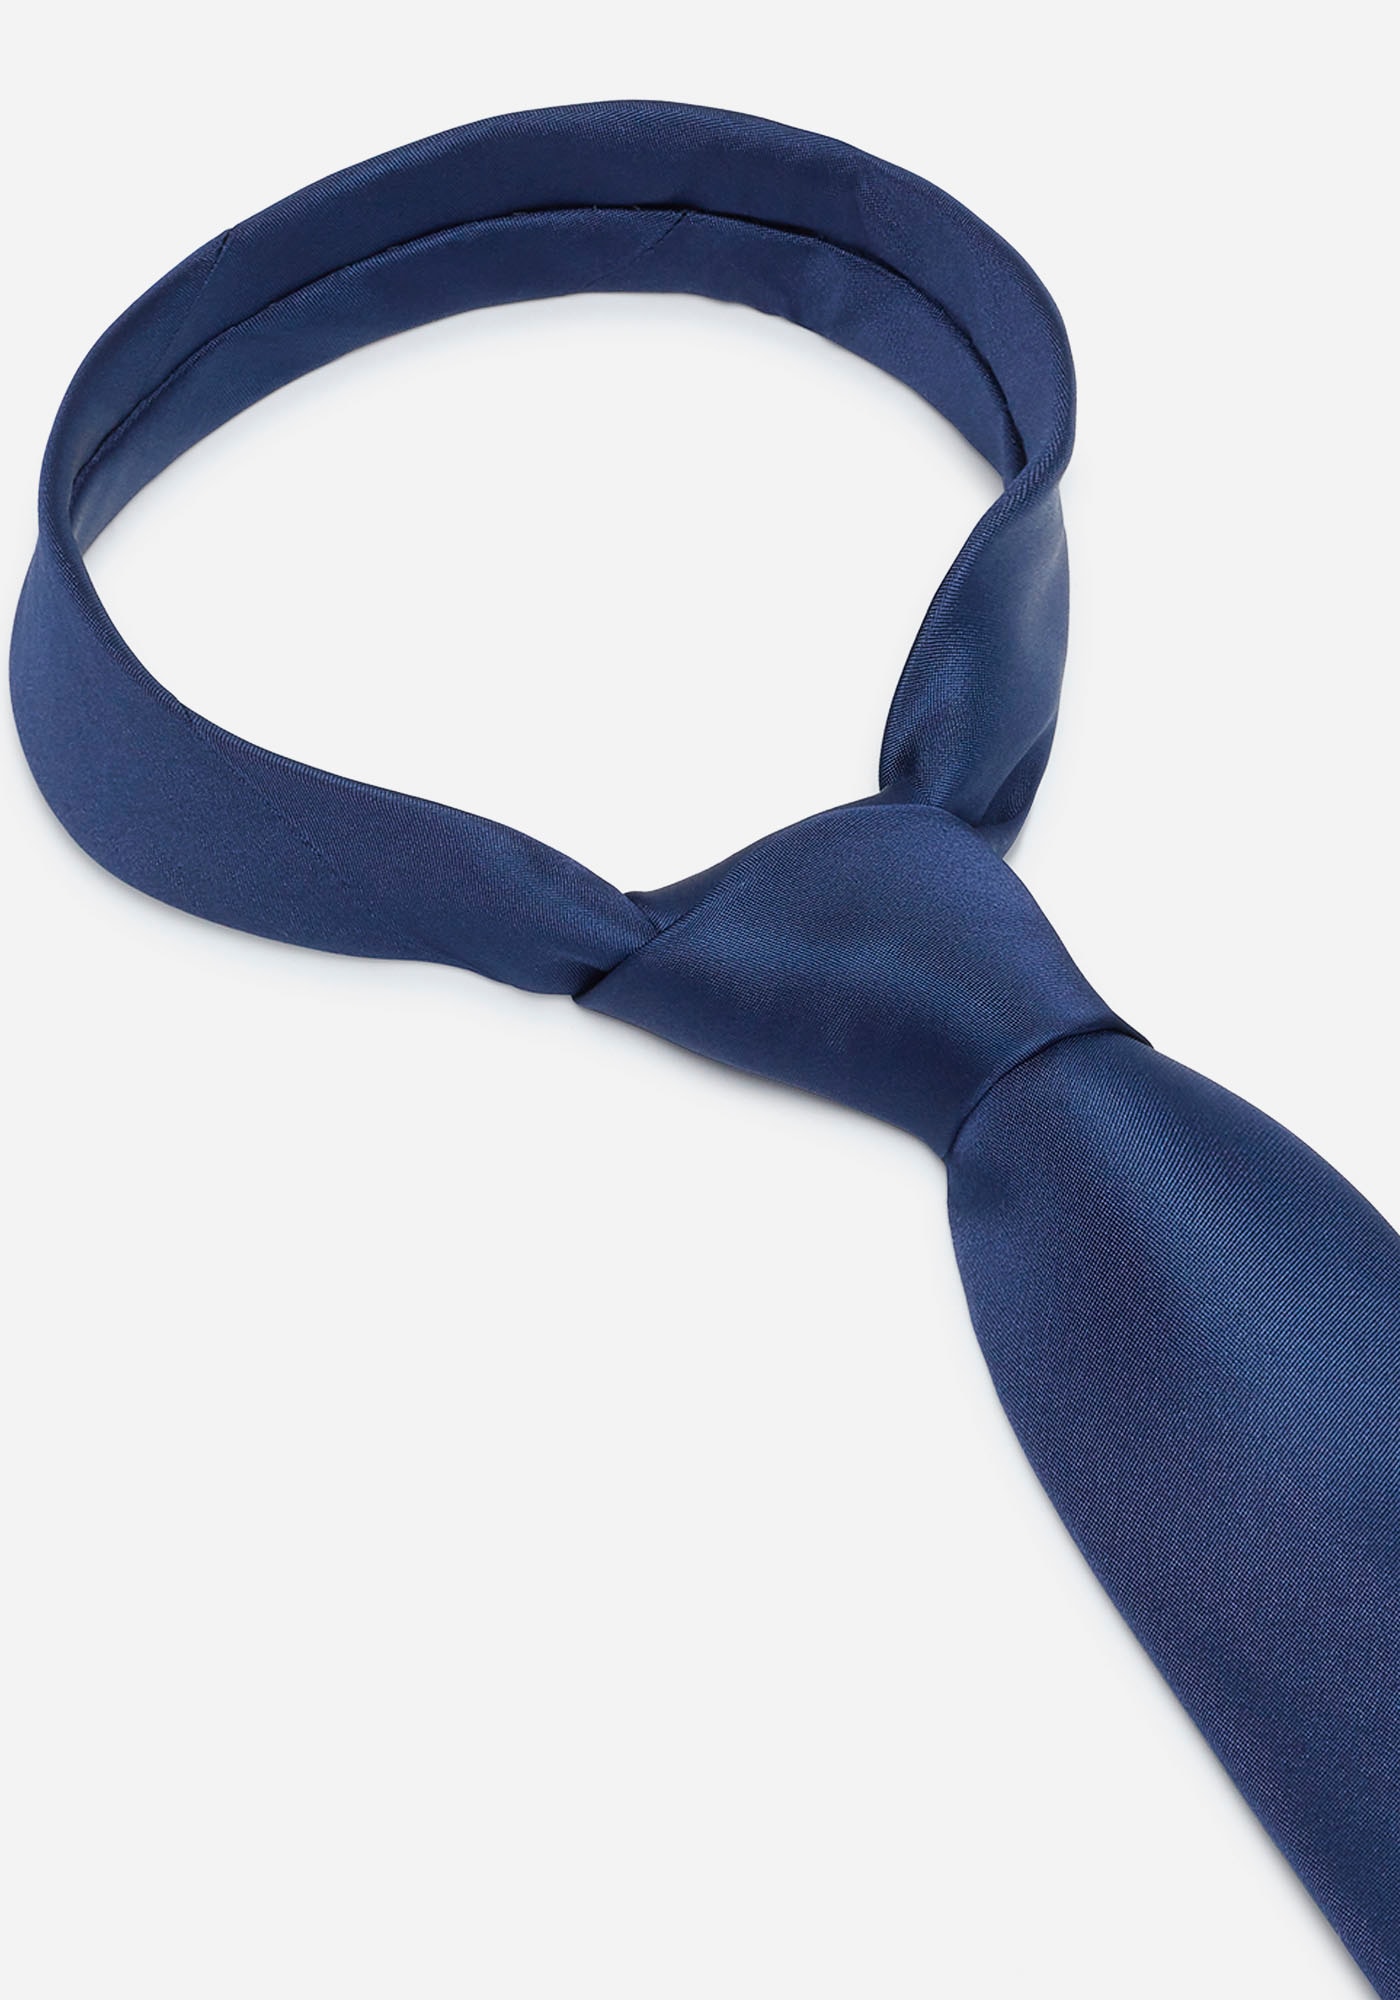 MONTI Krawatte »LUIGI«, mit Wolleinlage für angenehmes Tragegefühl und Formstabilität